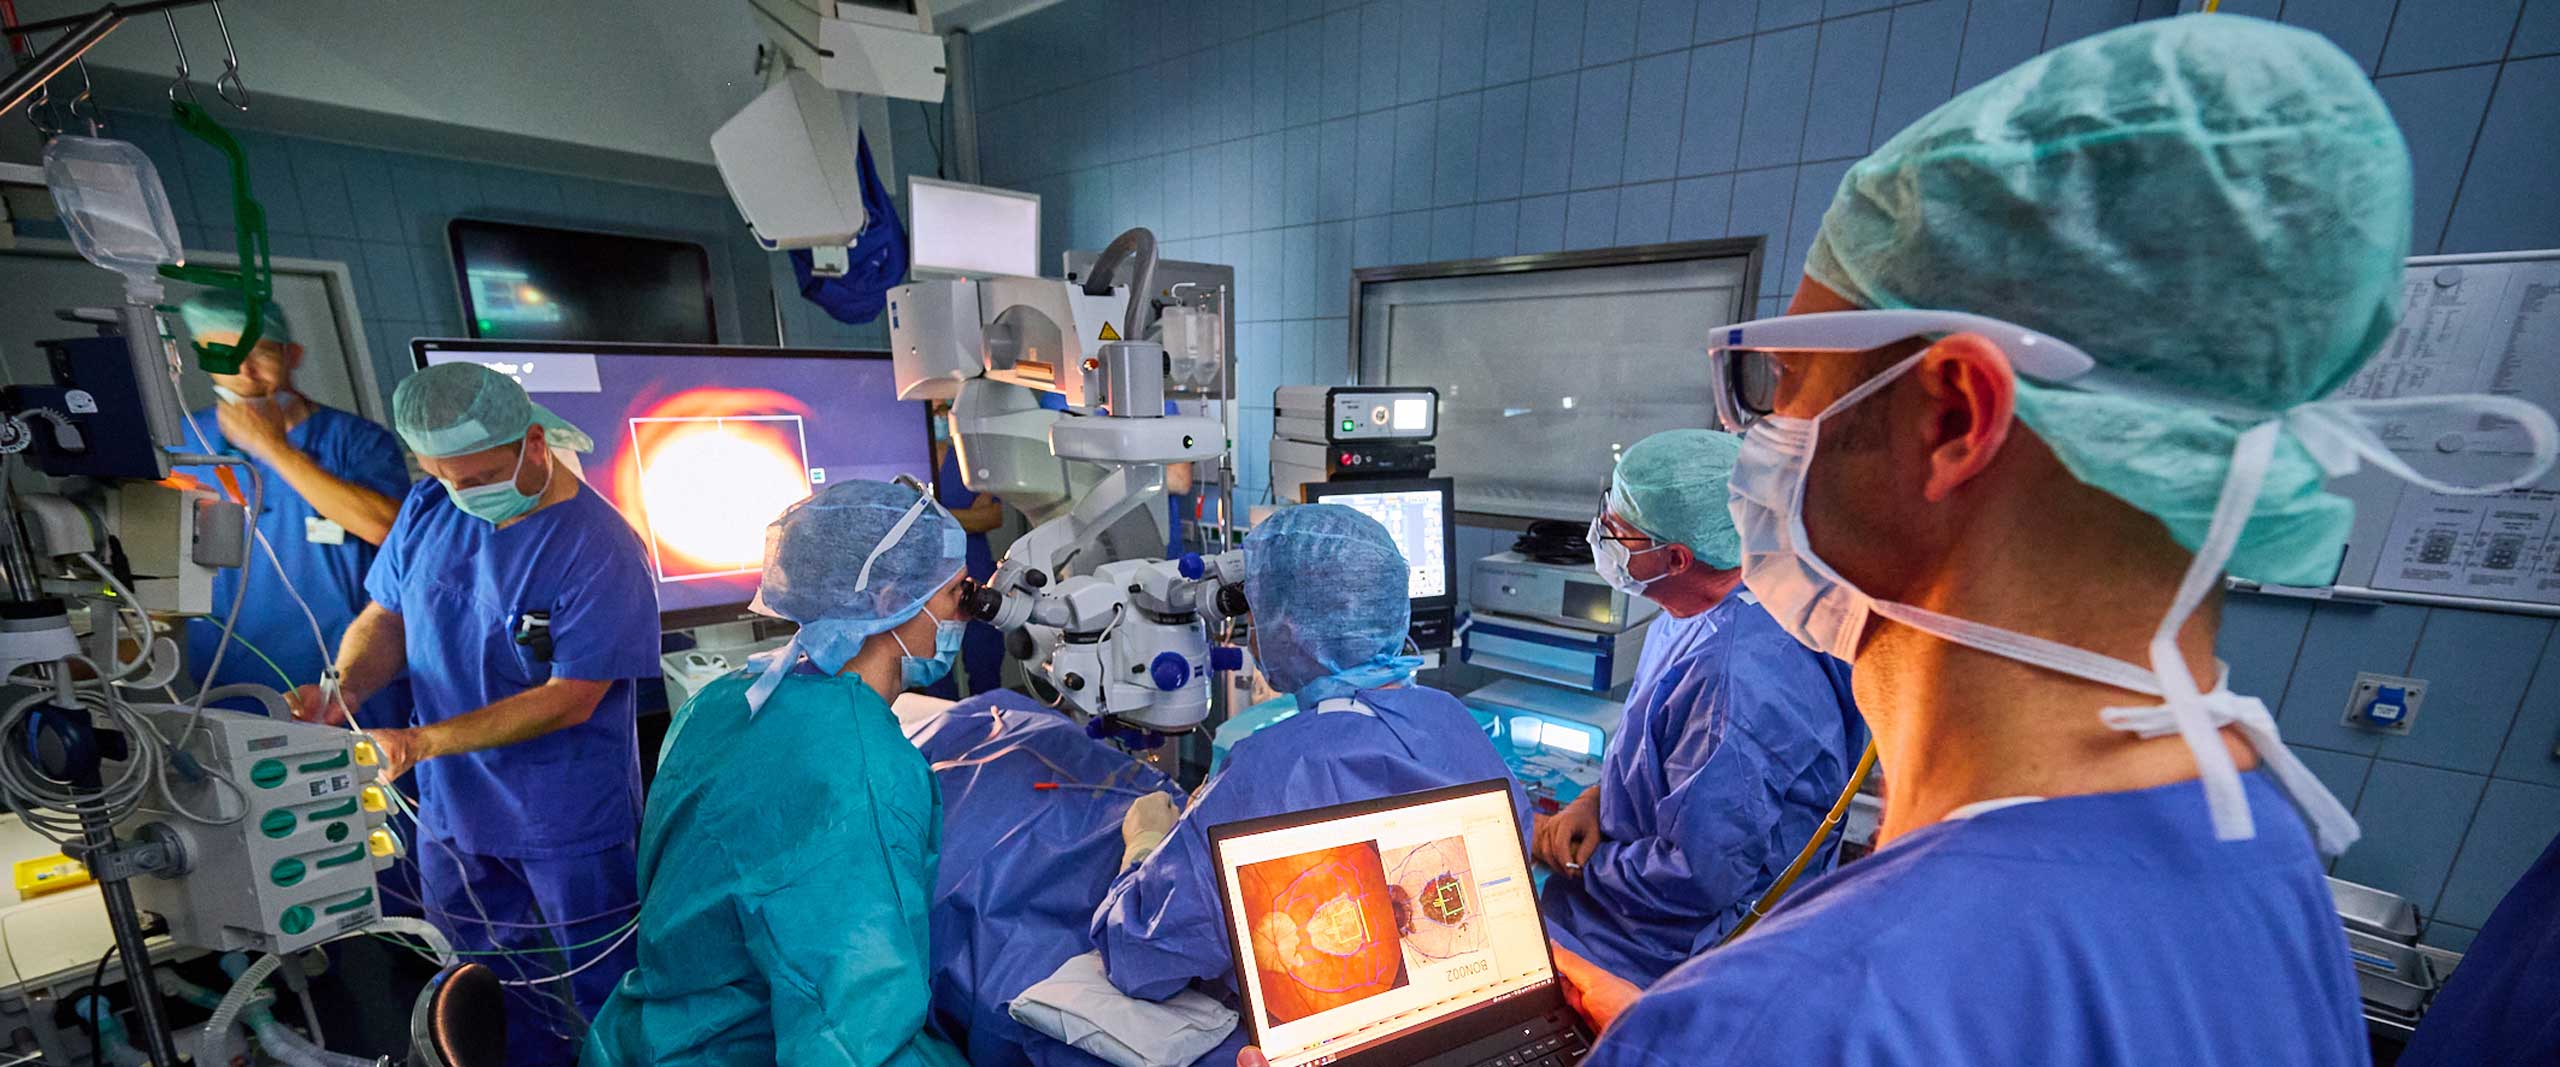 Implantation eines elektronischen Netzhaut-Chips in der Augenklinik